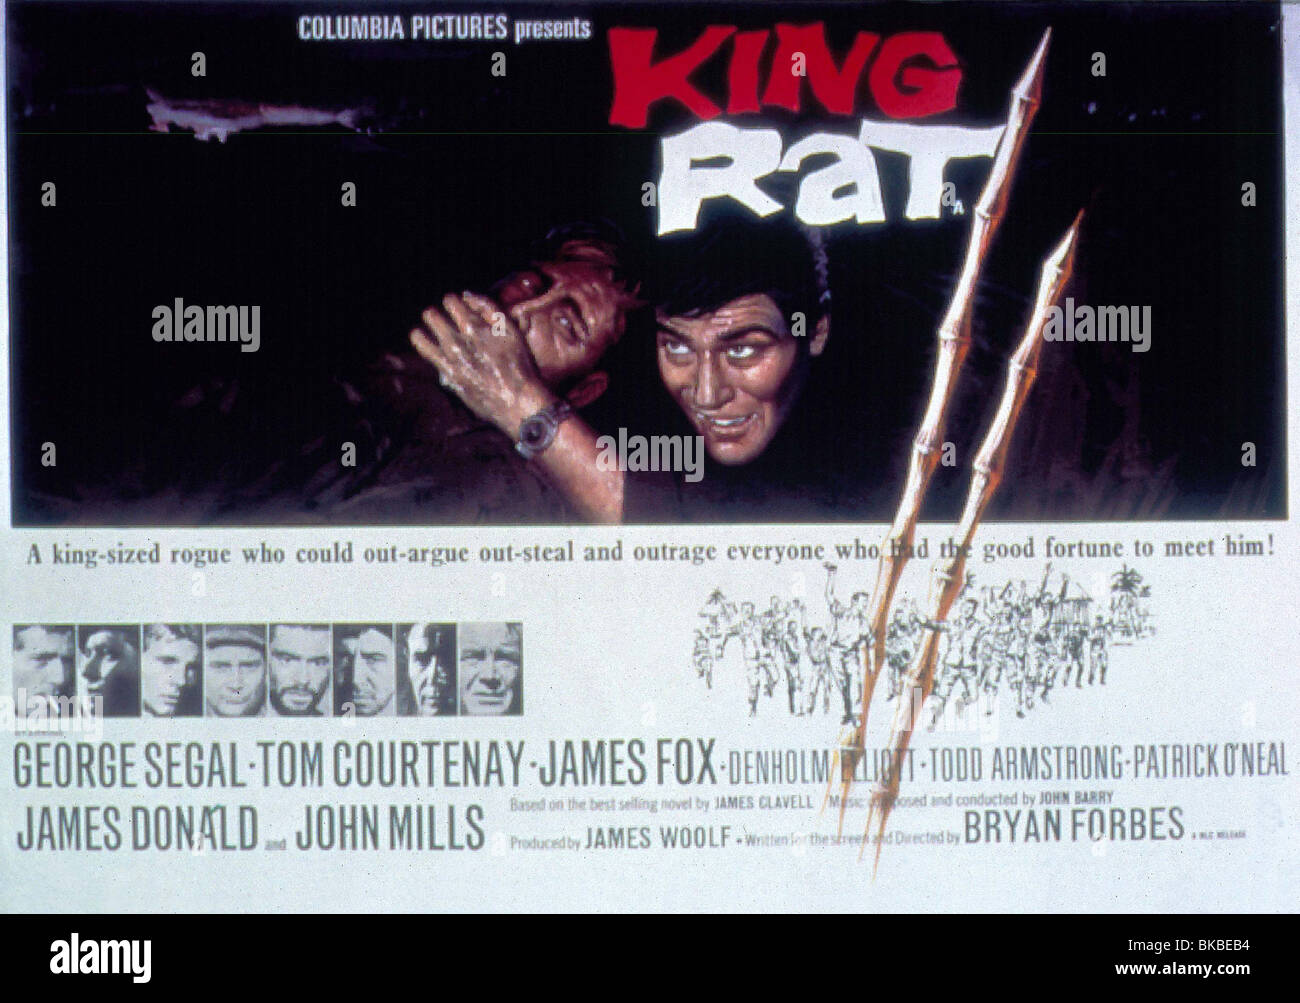 King Rat (film) - Wikipedia